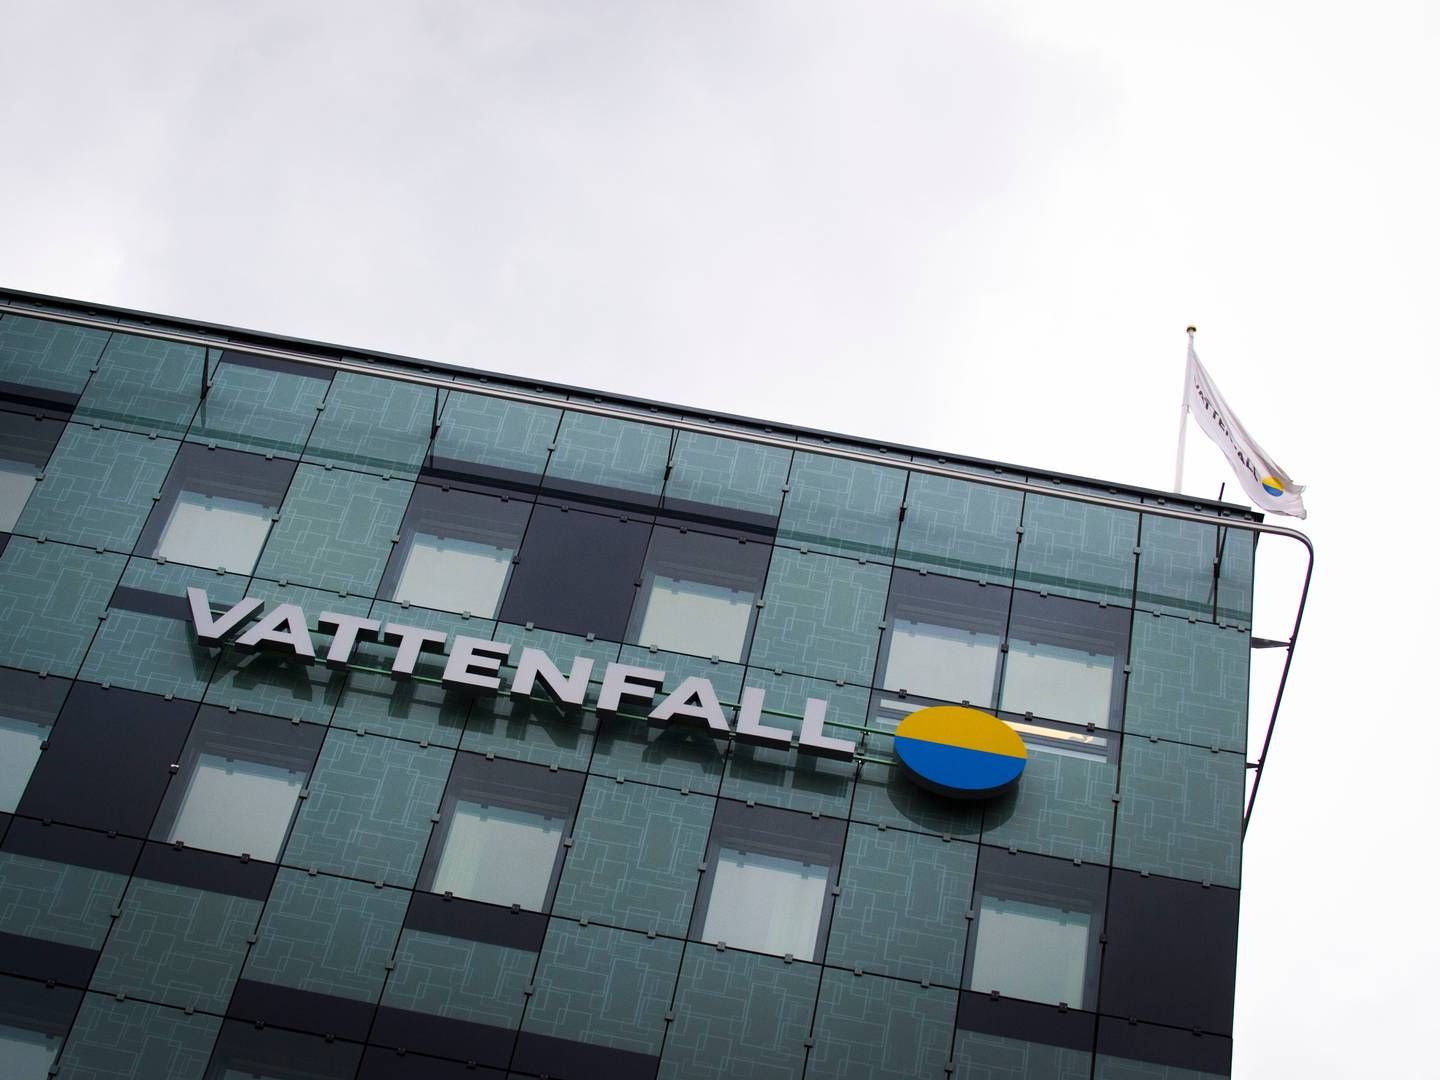 VATTENFALL SVARER: SVT.se skrev at Vattenfall har fått priser på kjernekraft på mellom 90-112 øre/kWh. Det svenske energiselskapet sier de ikke vil offentliggjøre priser. | Foto: Hanna Franzén / TT